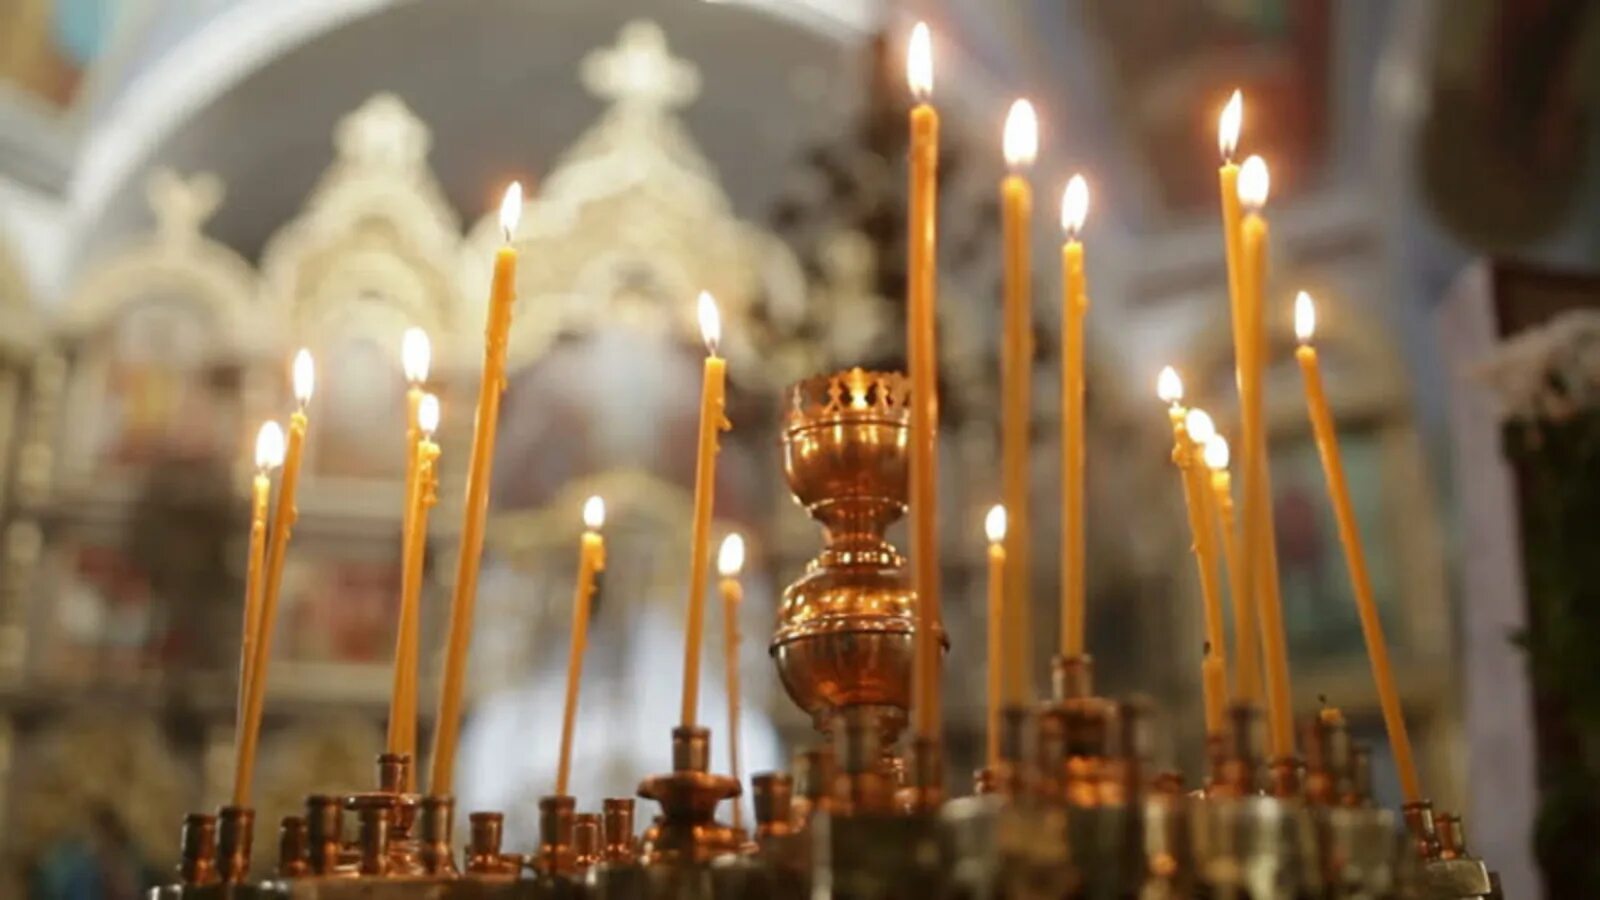 Свечи в храме. Горящие свечи в церкви. Свечи в храме красивые. Свечи горят в церкви. В церкви горят свечи